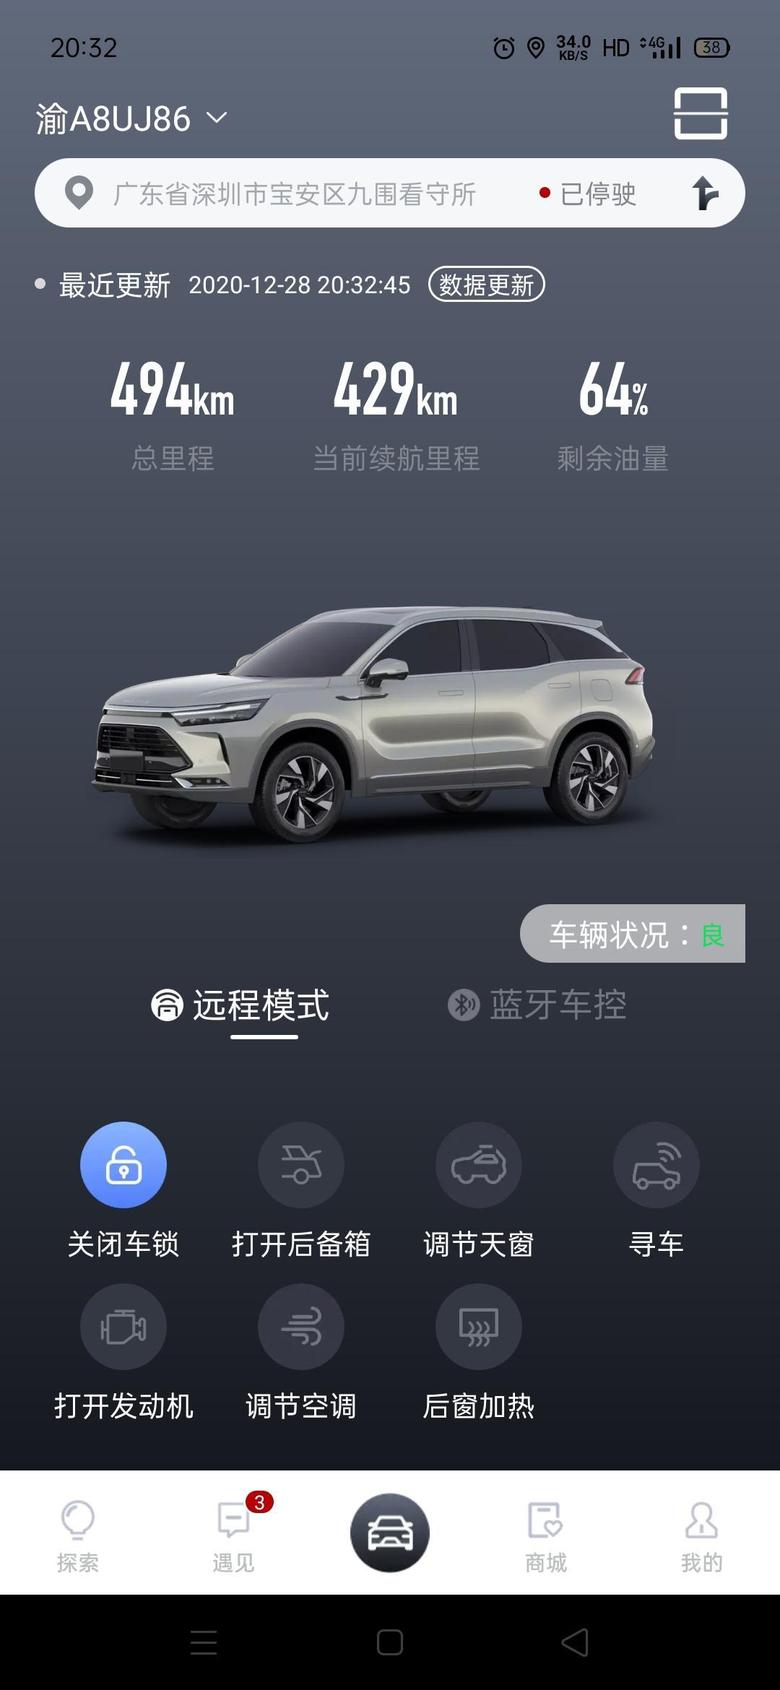 北京x7 显示关闭车锁这个有没有其他影响